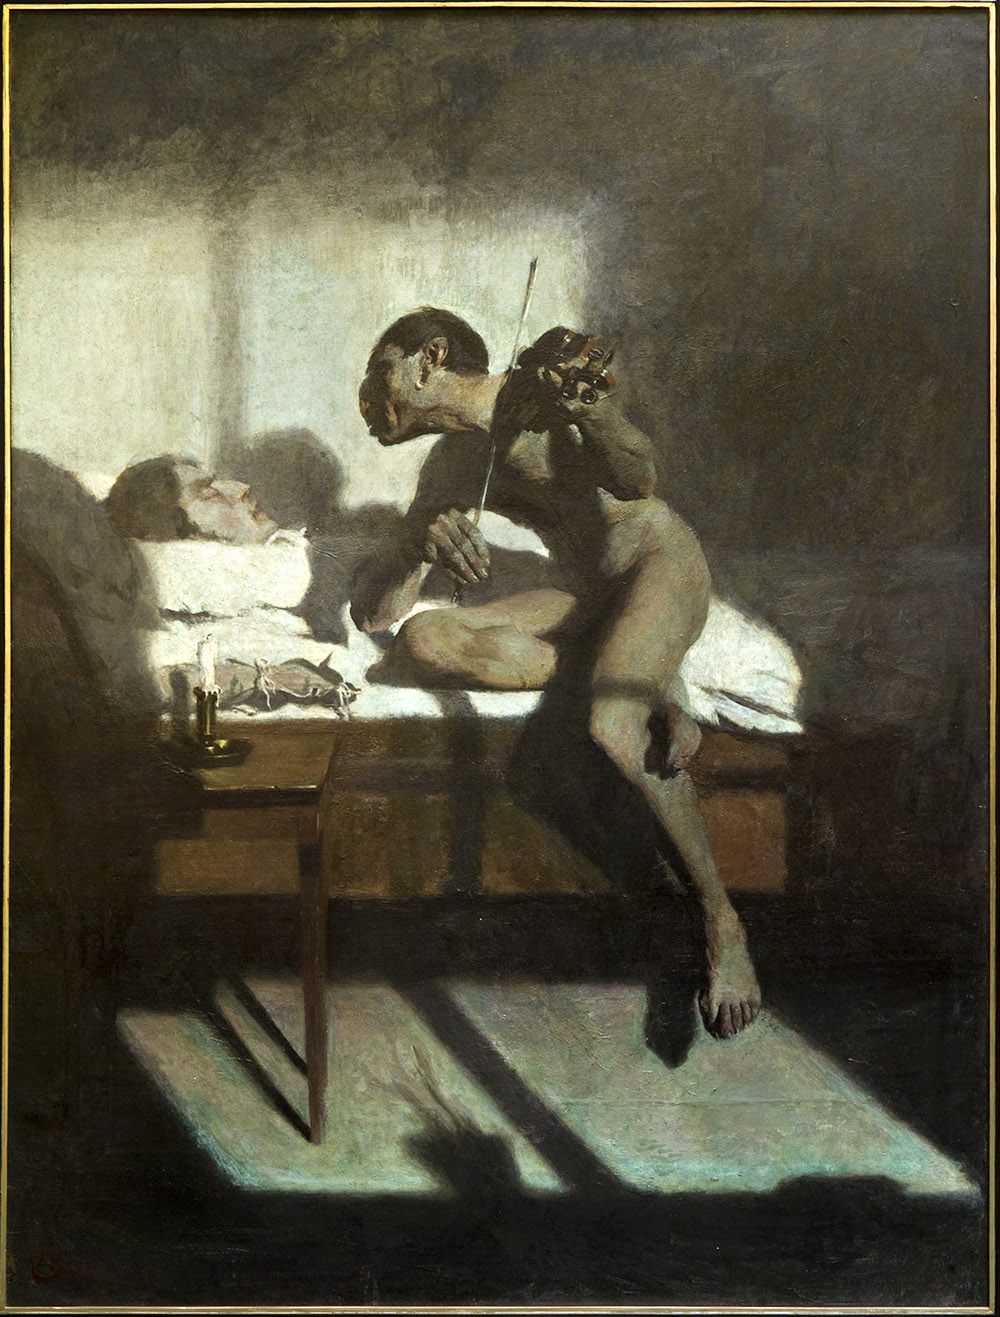 Edward Okuń, Śmierć Paganiniego, oil on canvas, 184 x 138 cm, owned by Muzeum Lubelskie in Lublin